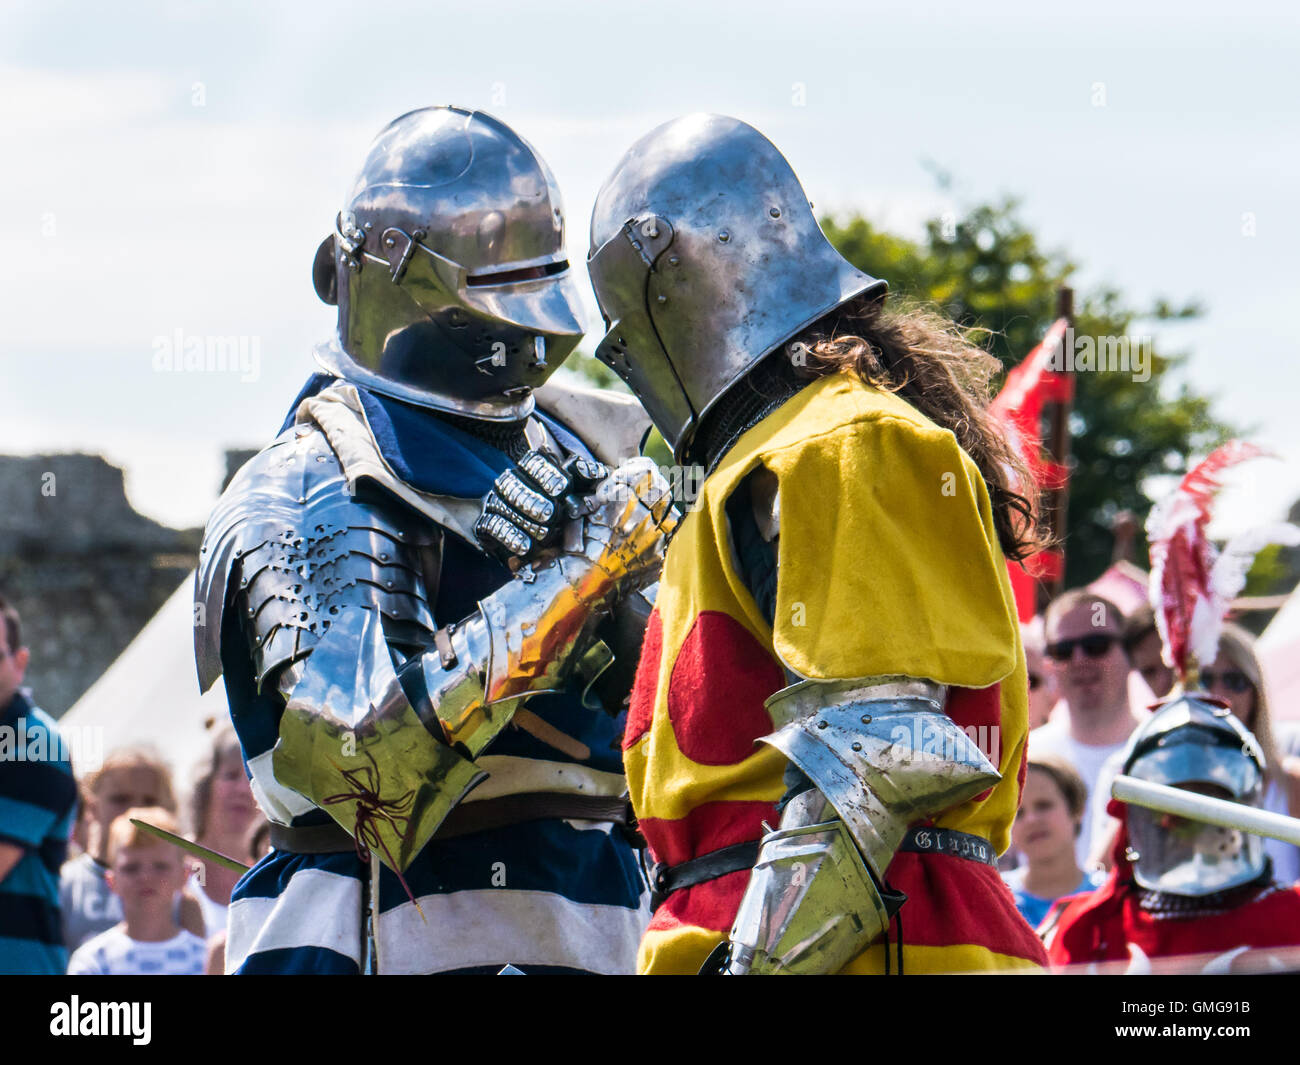 Due combattimento medievale reenactors in armatura completa agitare le mani prima di combattere Foto Stock